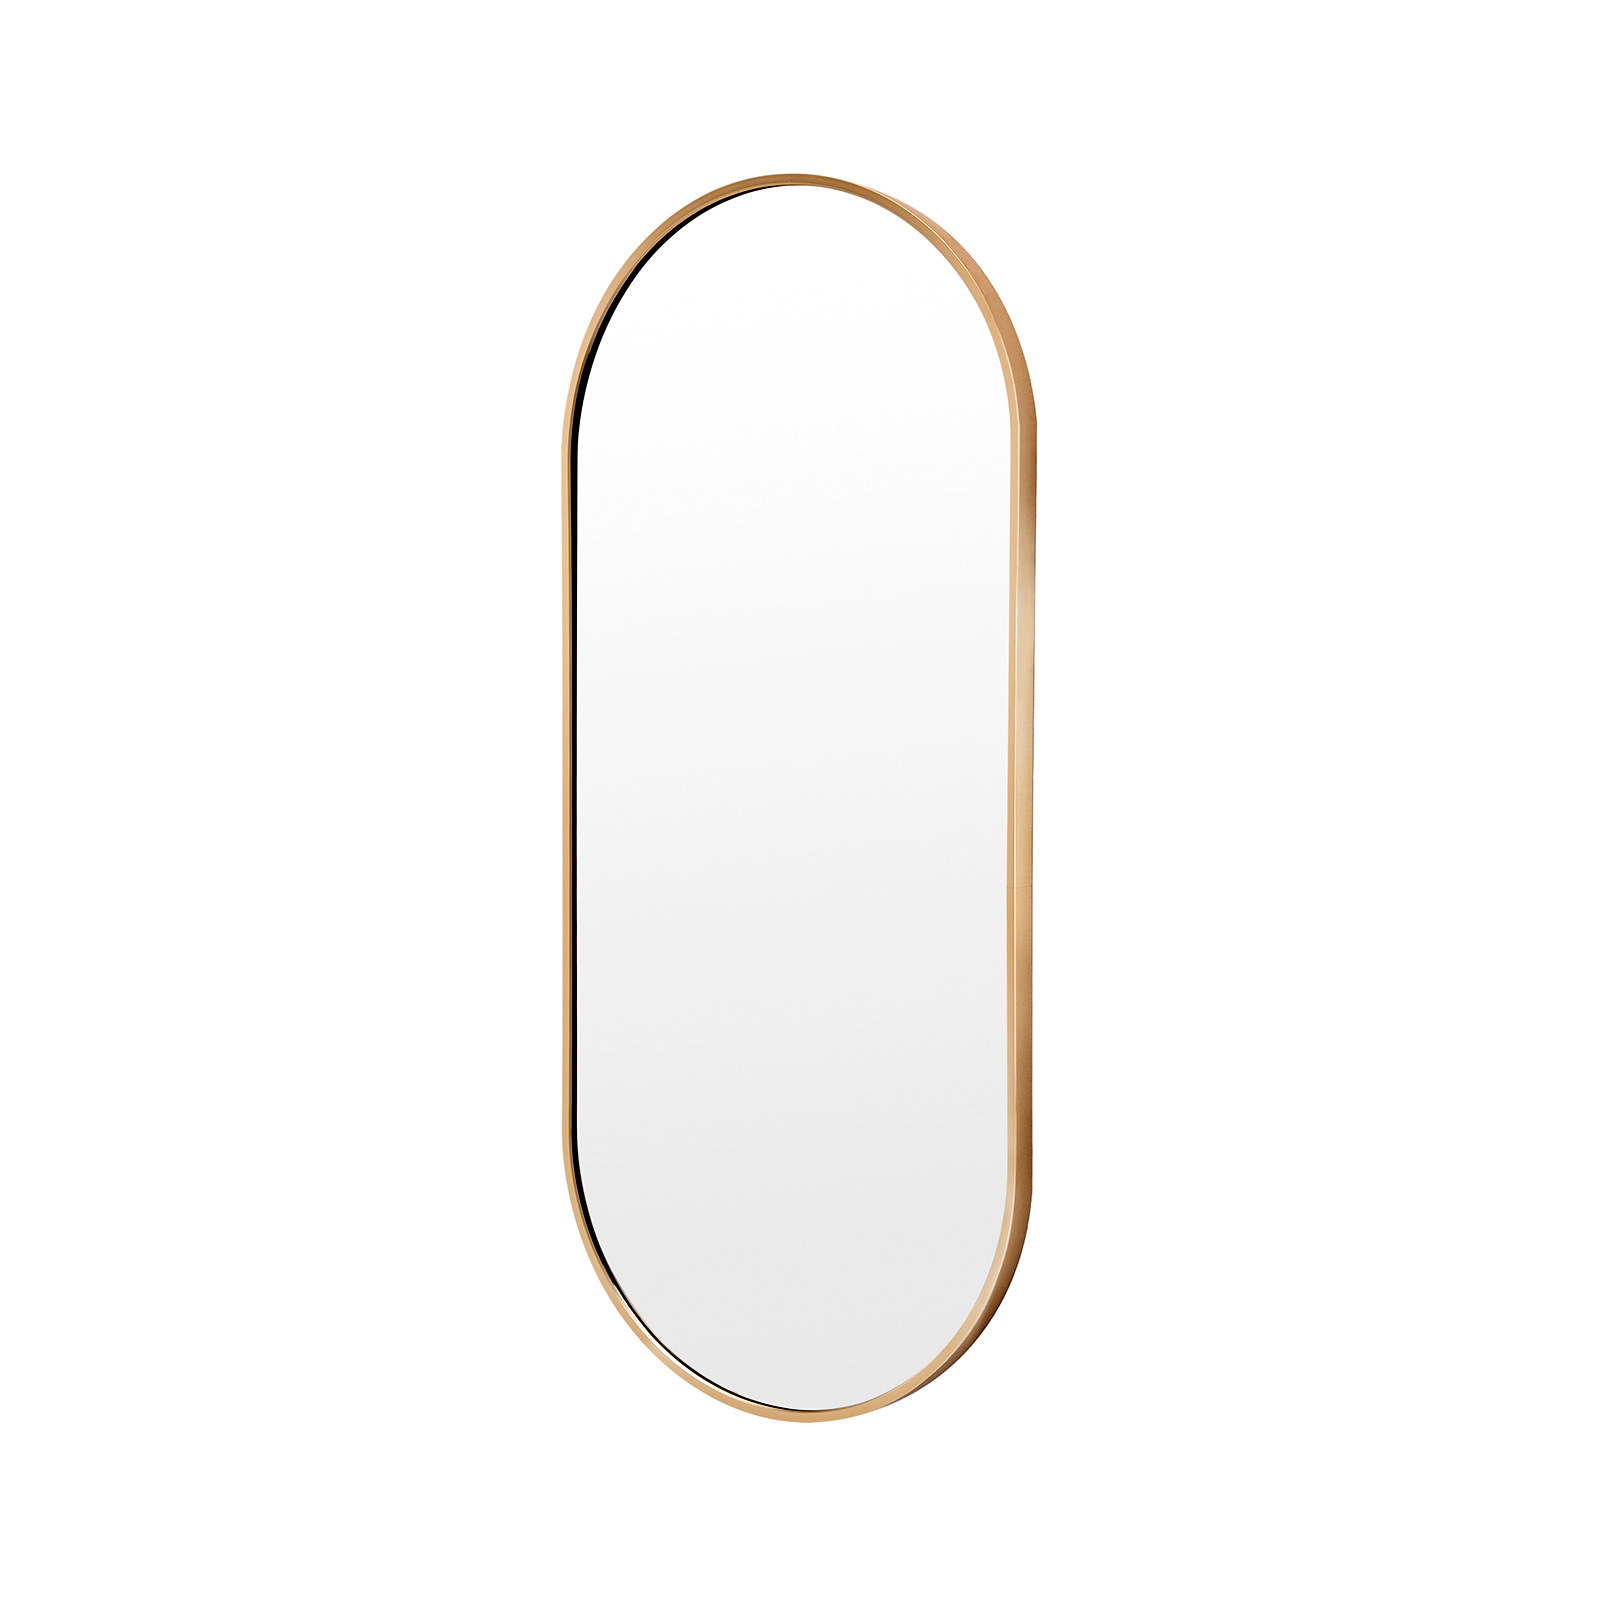 45x100cm Wall Mirror Oval Bathroom - GOLD